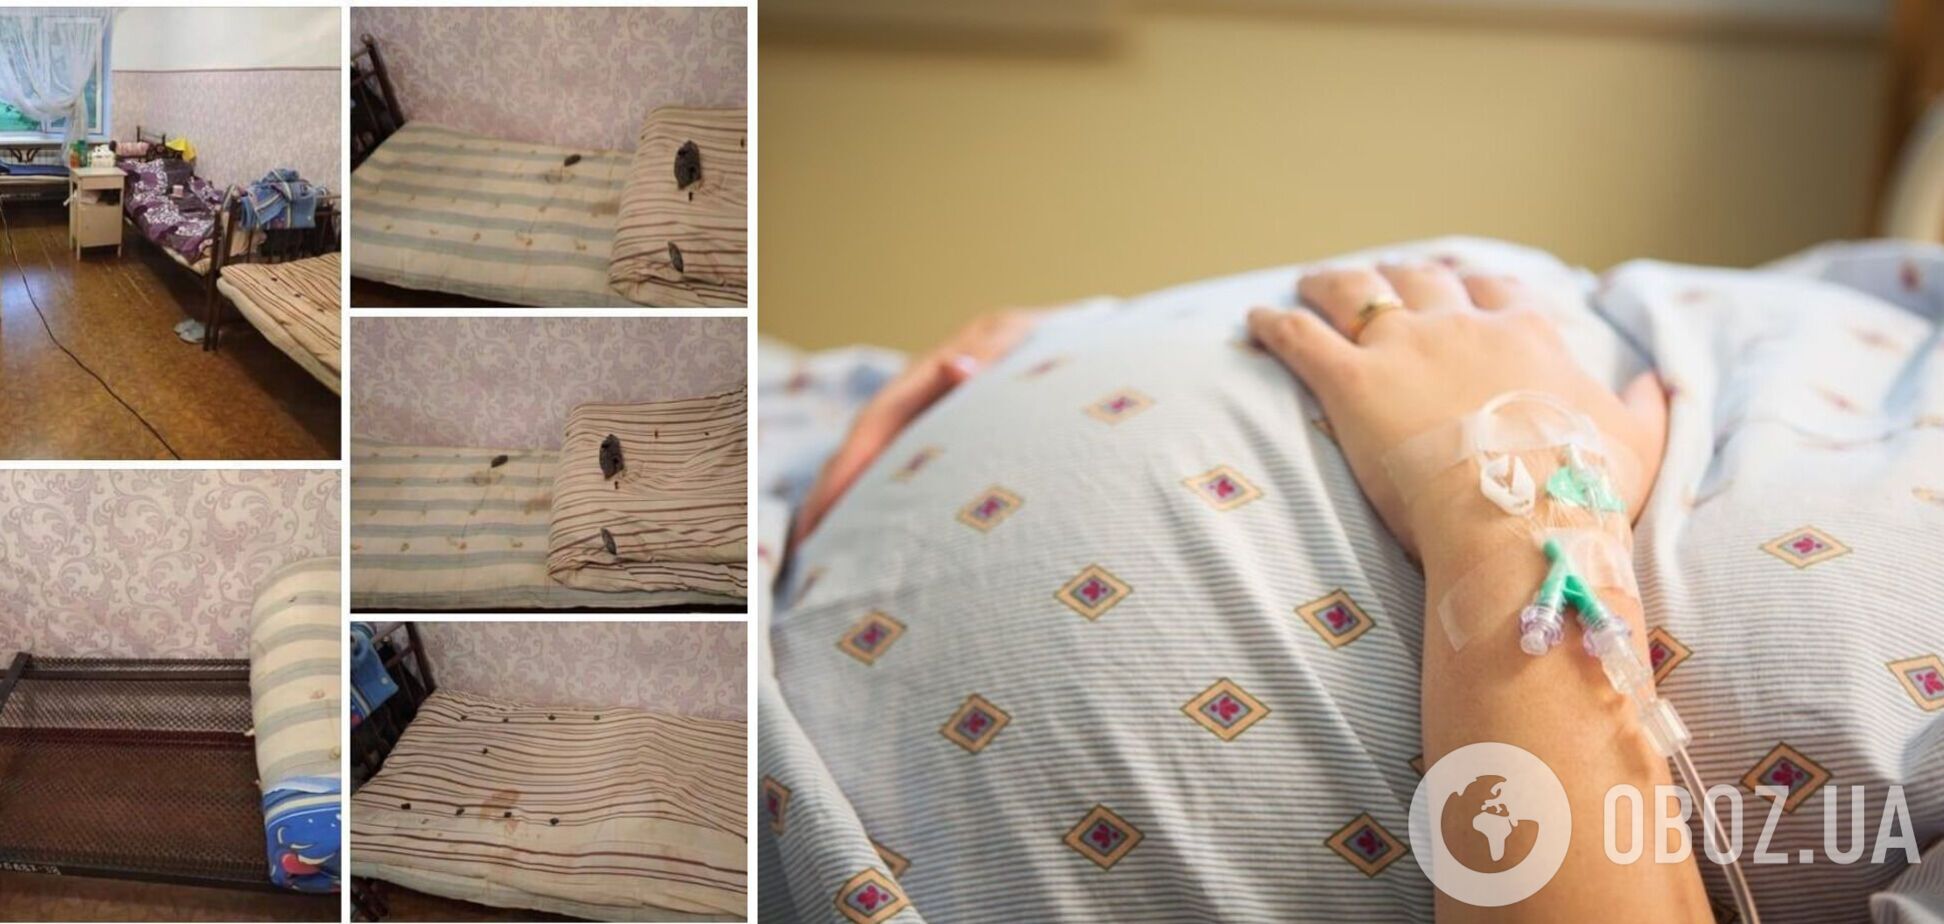 Опубліковано фото відділення для вагітних в Лисичанську з обдертими і брудними матрацами